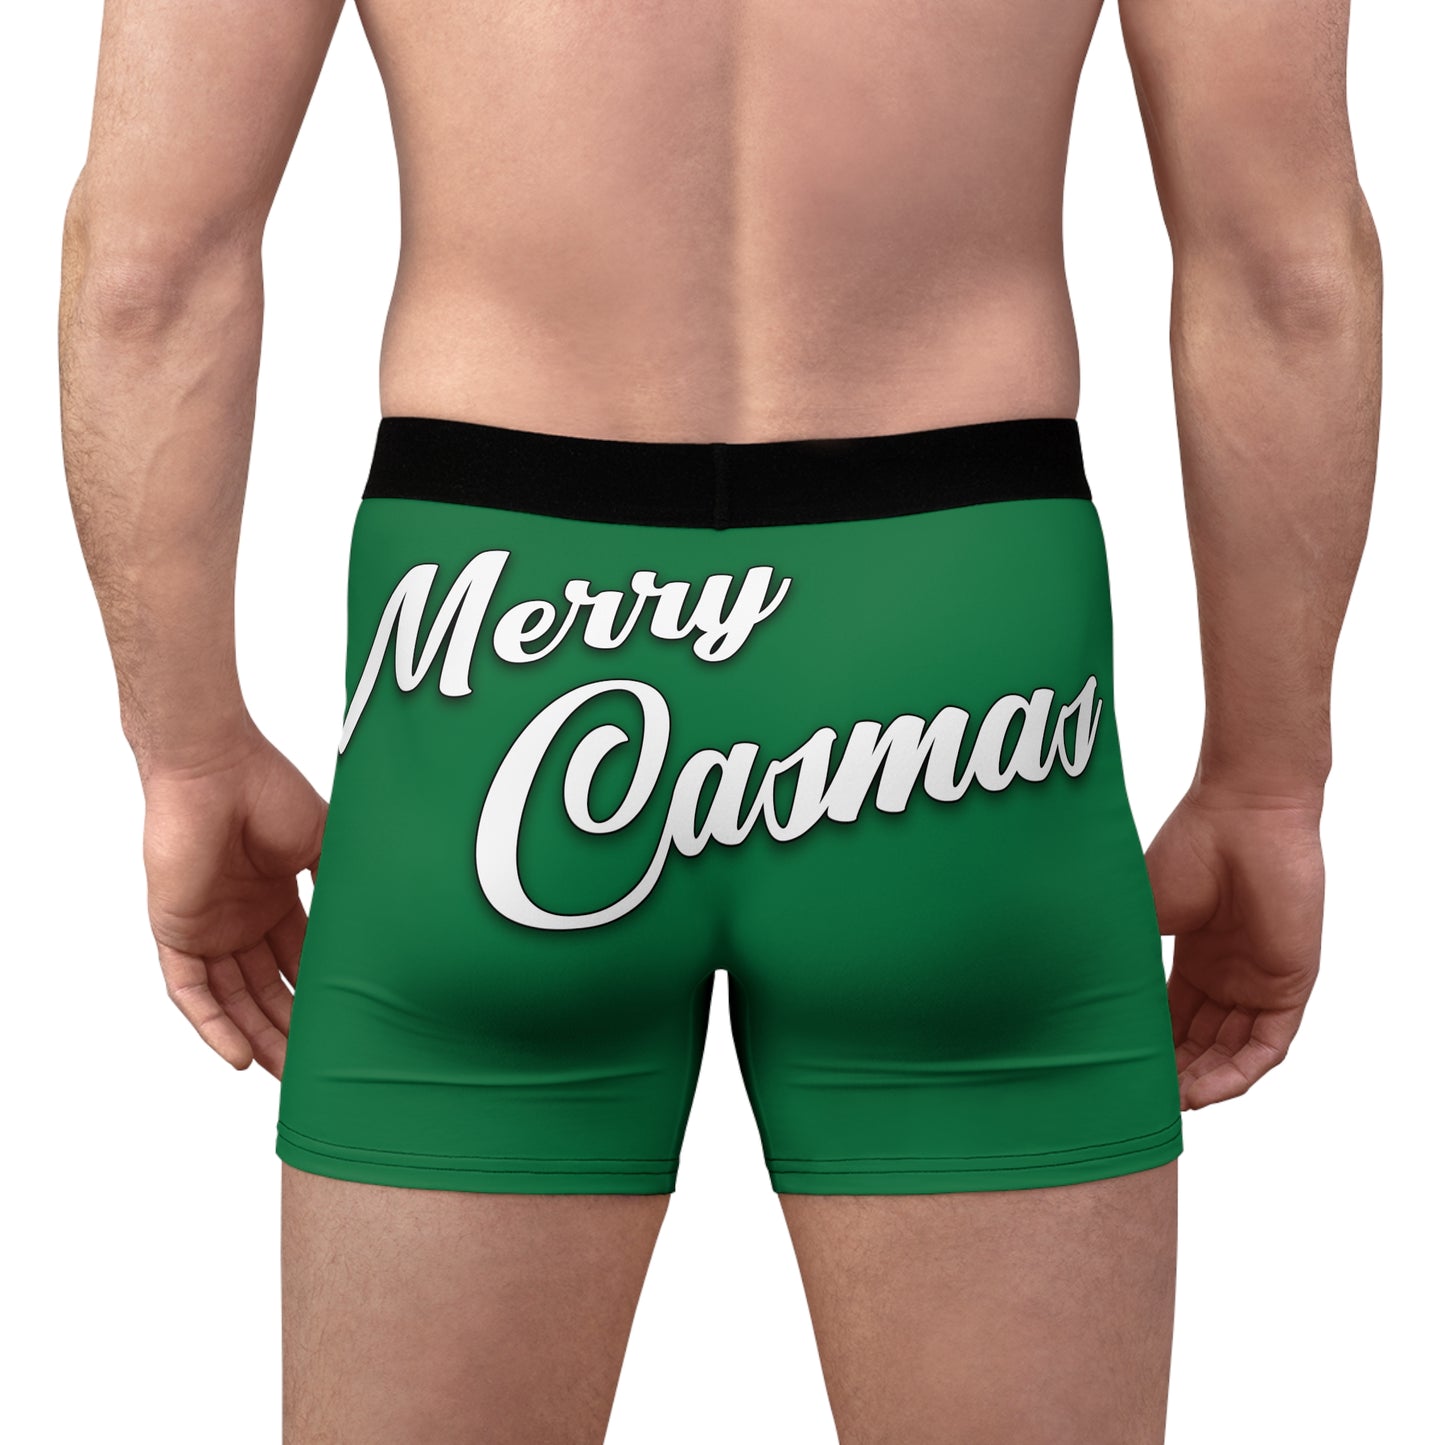 Casmas Green Men's Boxer Briefs